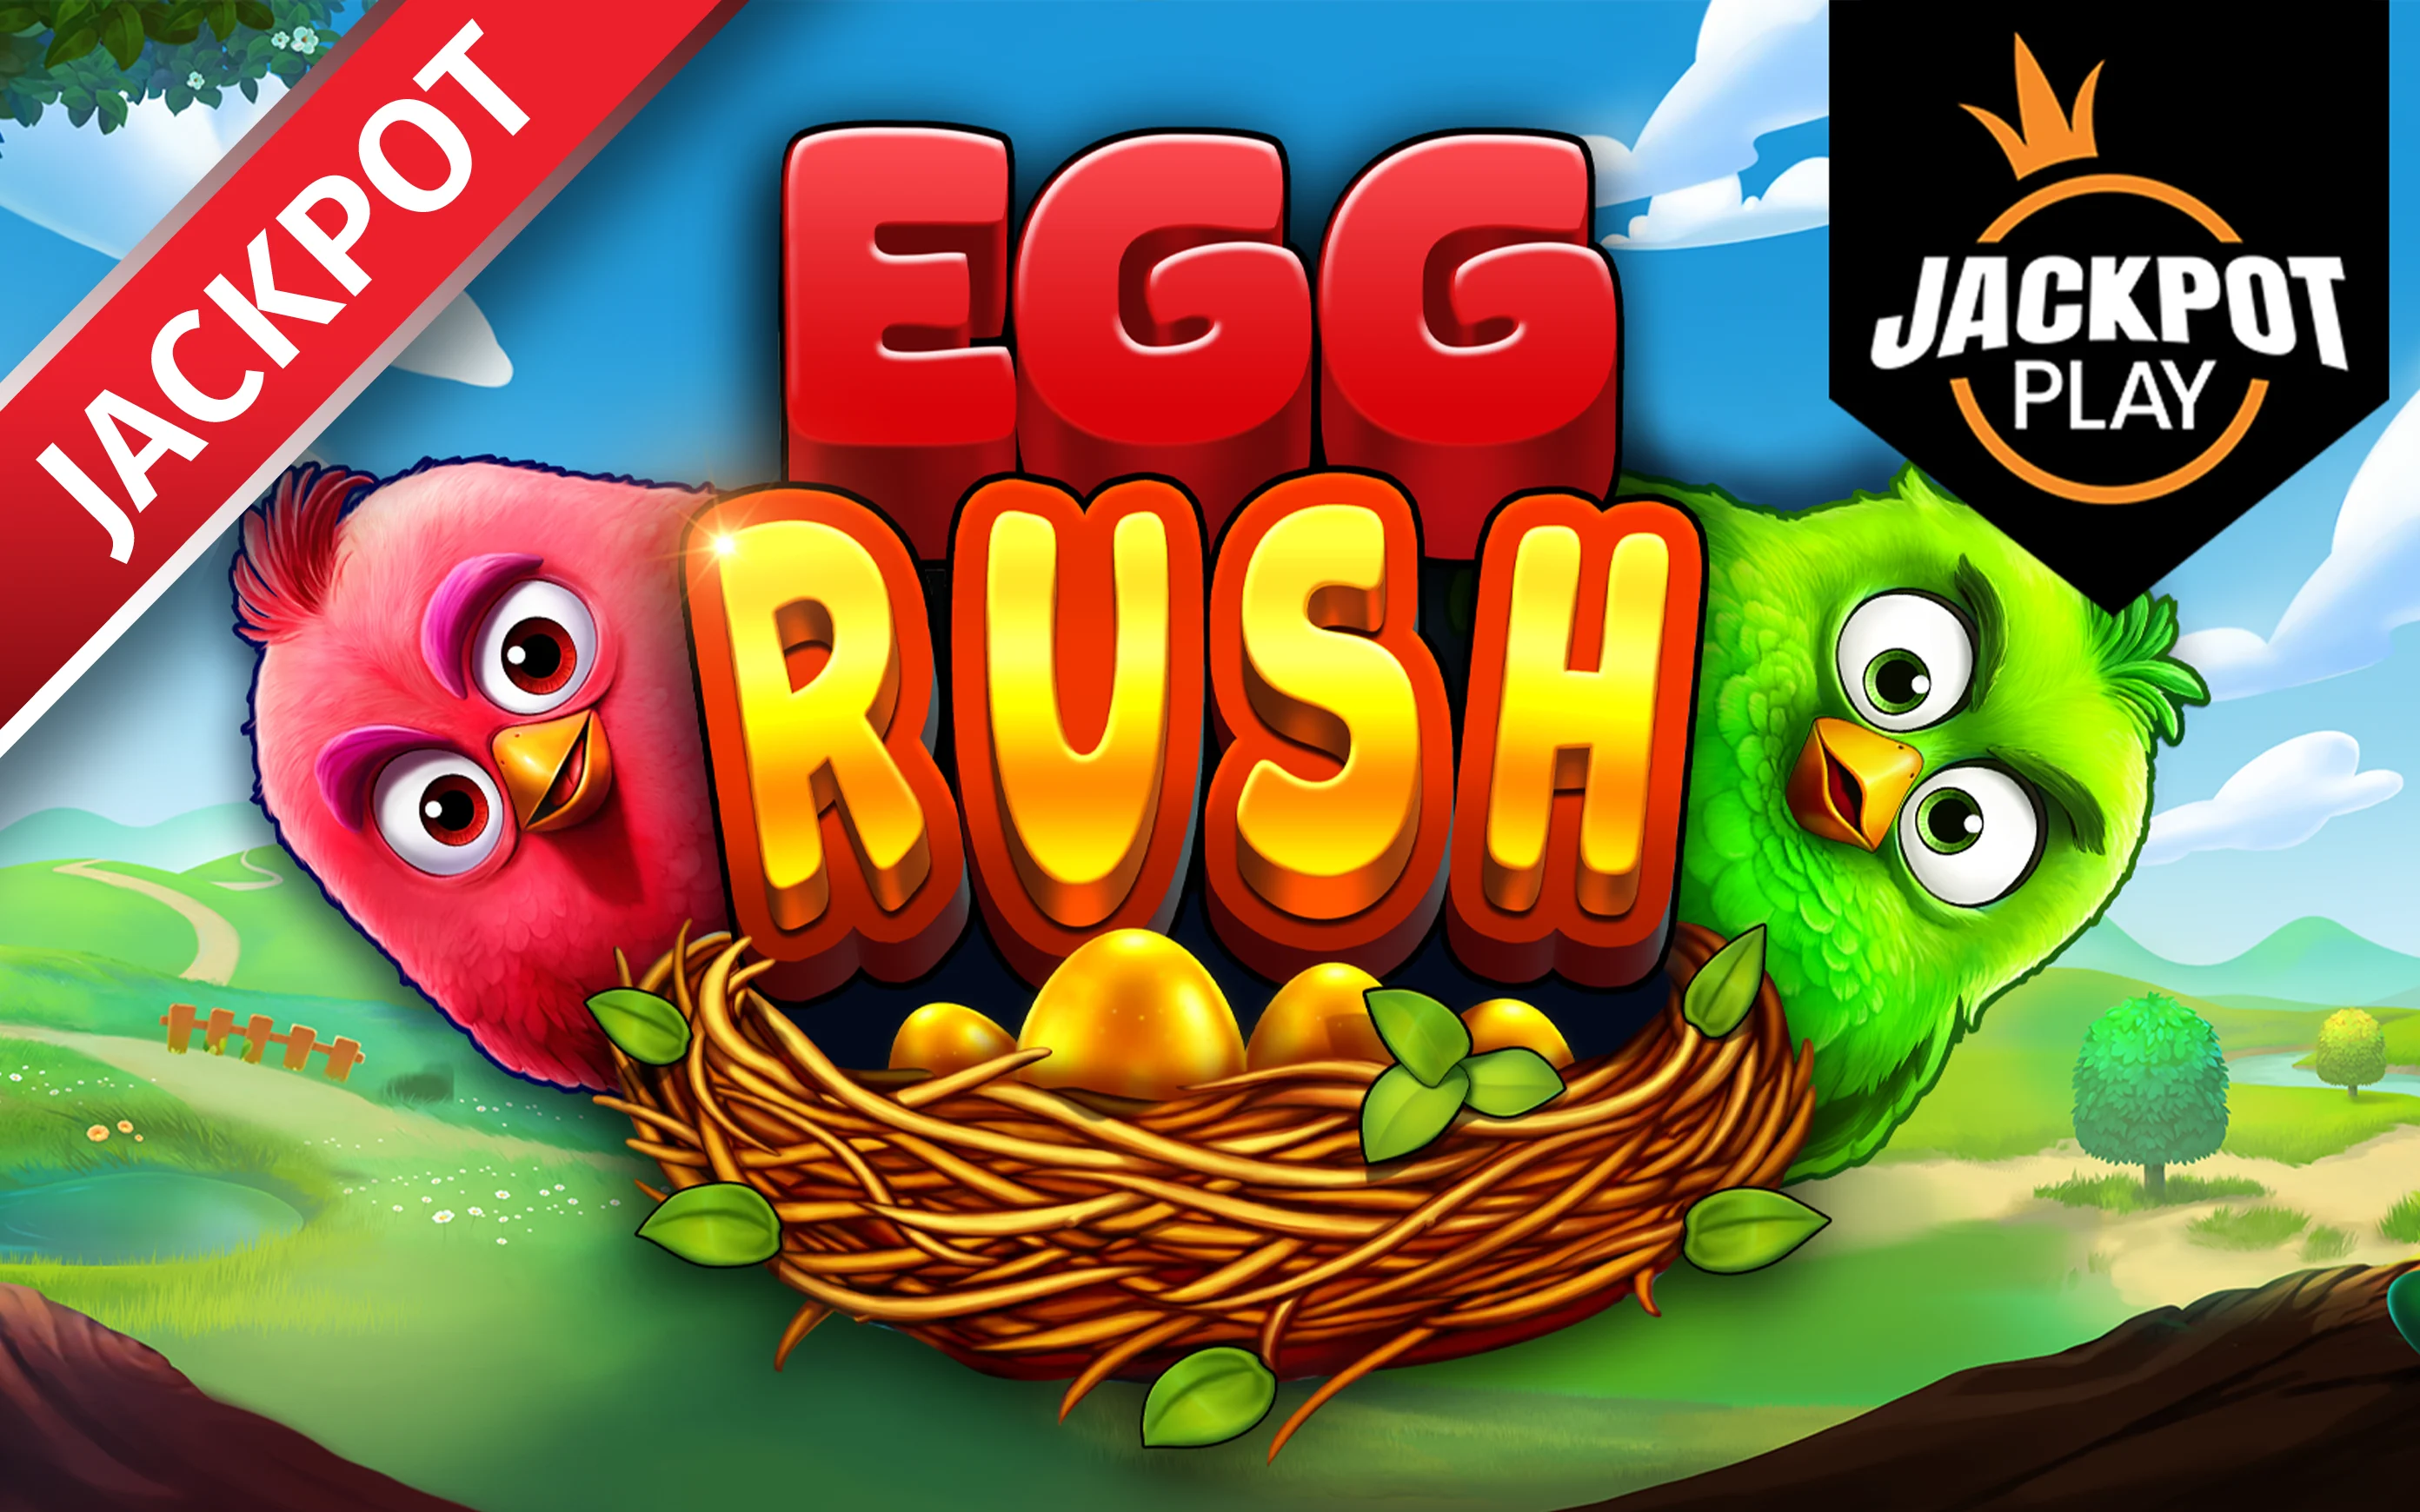 Play Egg Rush Jackpot Play on Starcasino.be online casino